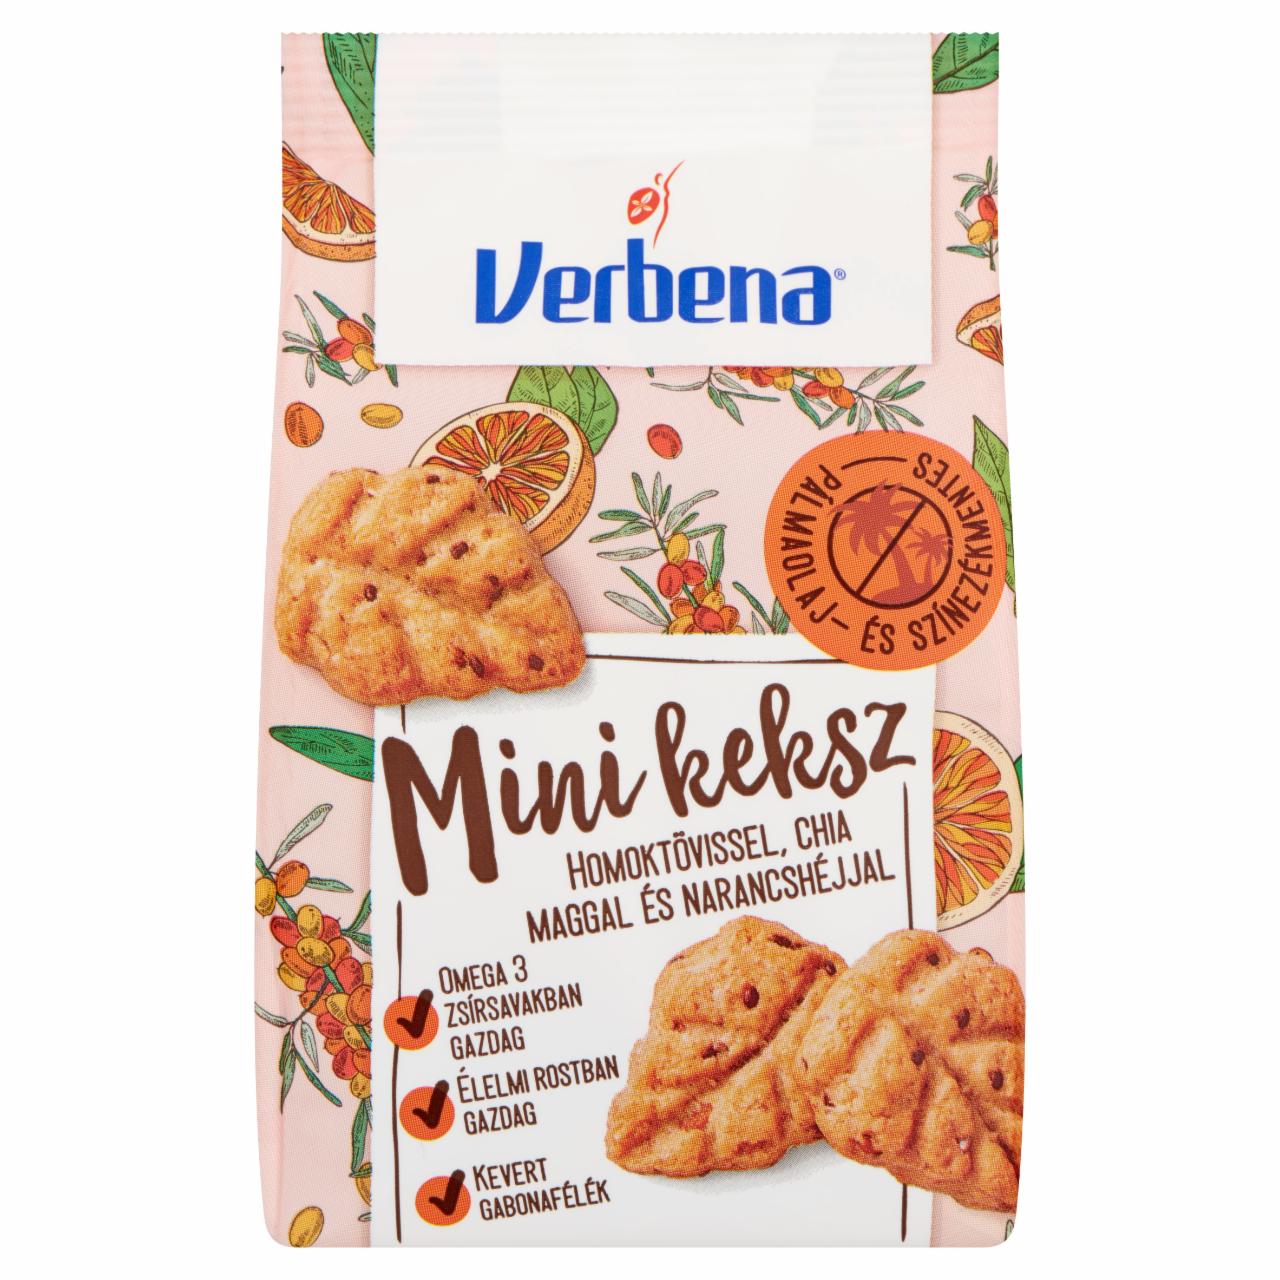 Képek - Verbena mini keksz homoktövissel, chia maggal és narancshéjjal 90 g